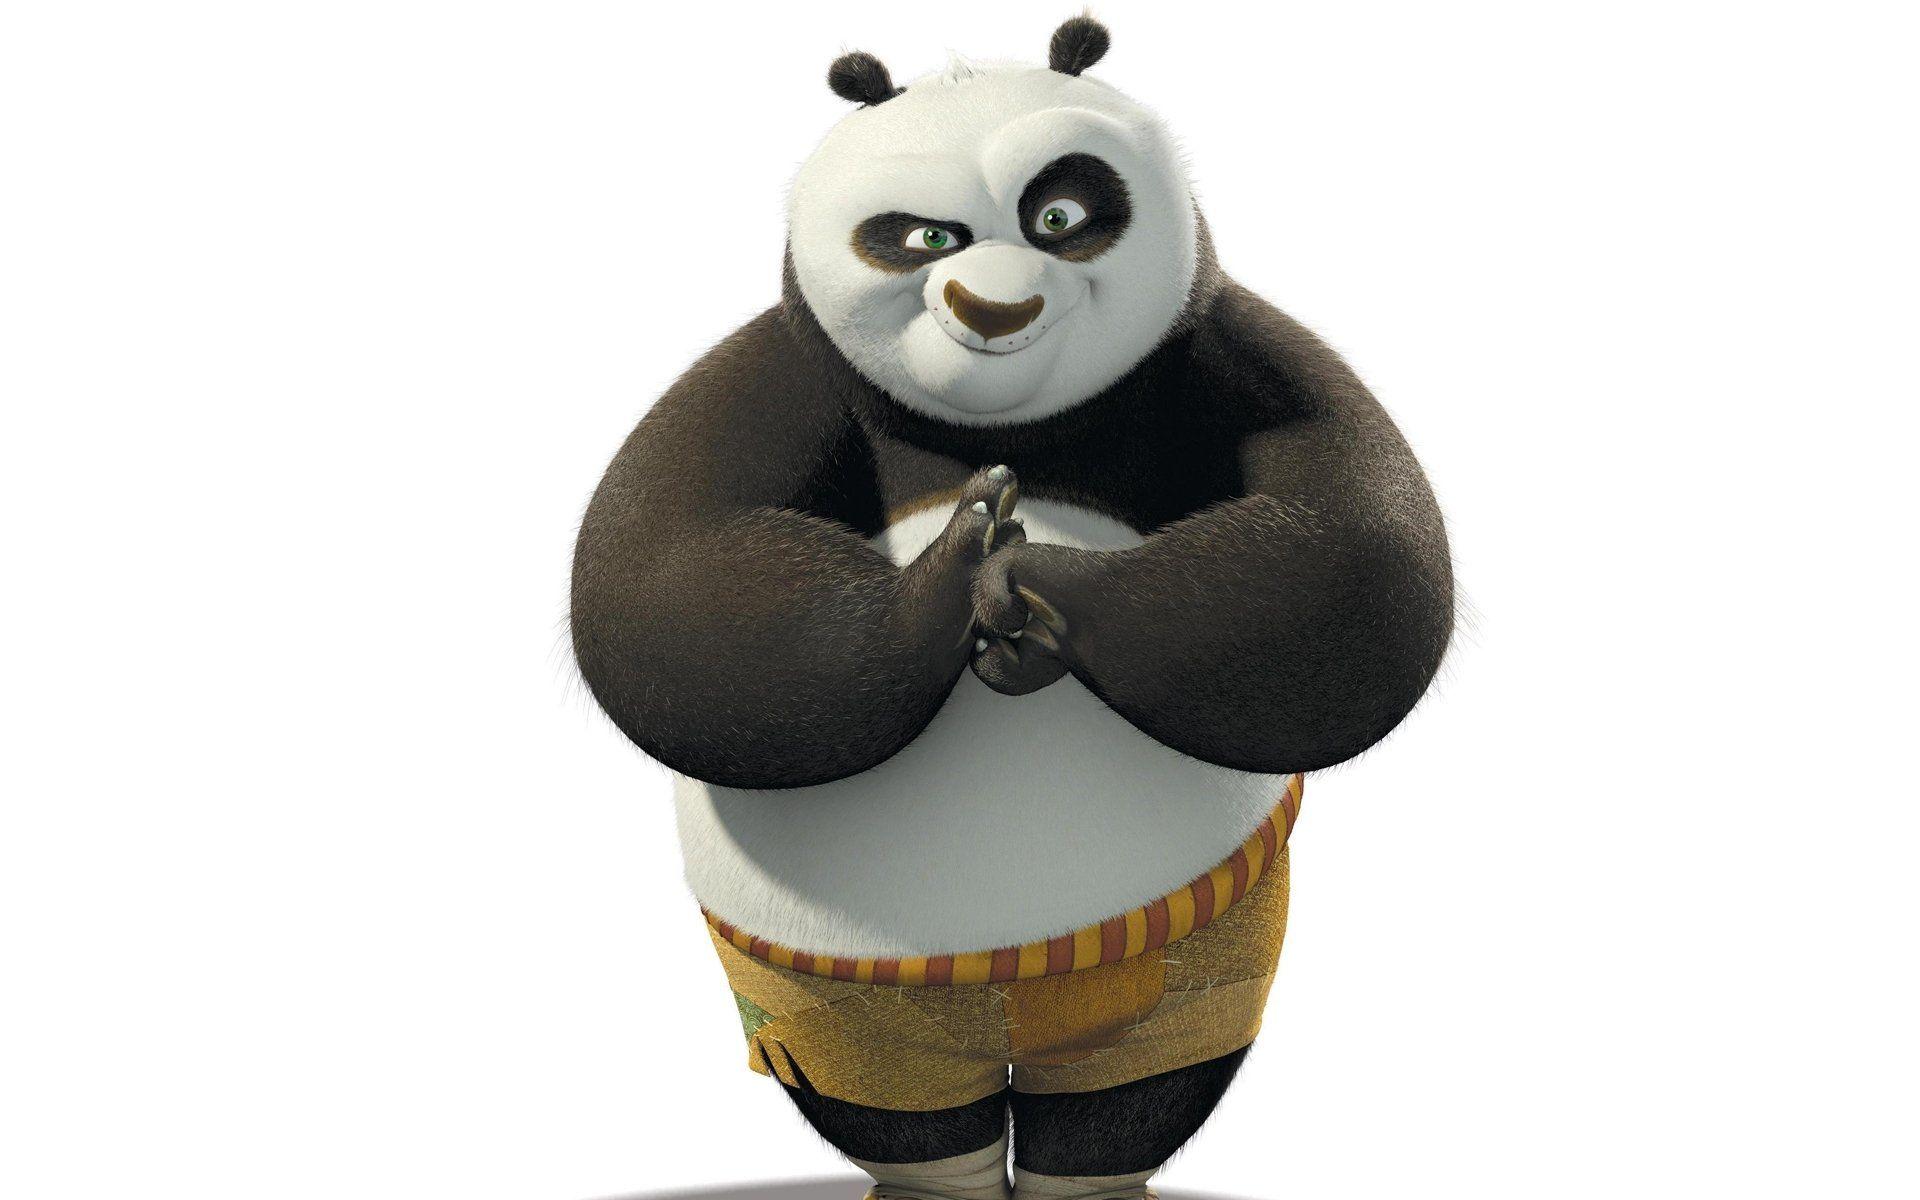 Cập nhật với hơn 75 về hình kungfu panda mới nhất - coedo.com.vn